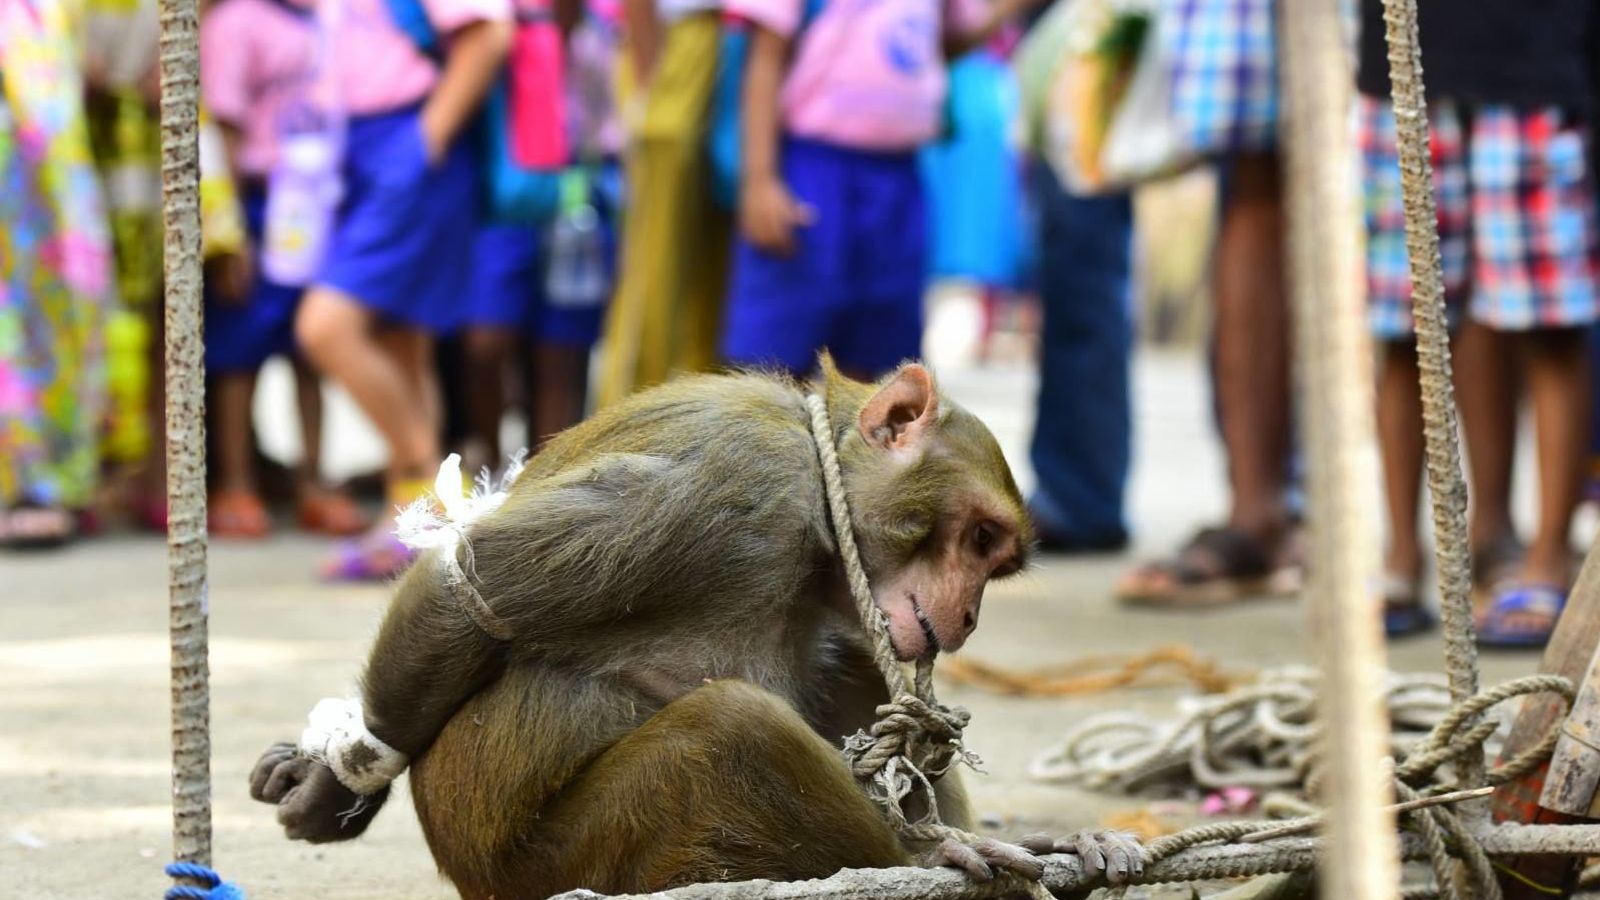 Foto: El macaco fue sometido a una "humillación pública". (Mumbai Mirror)